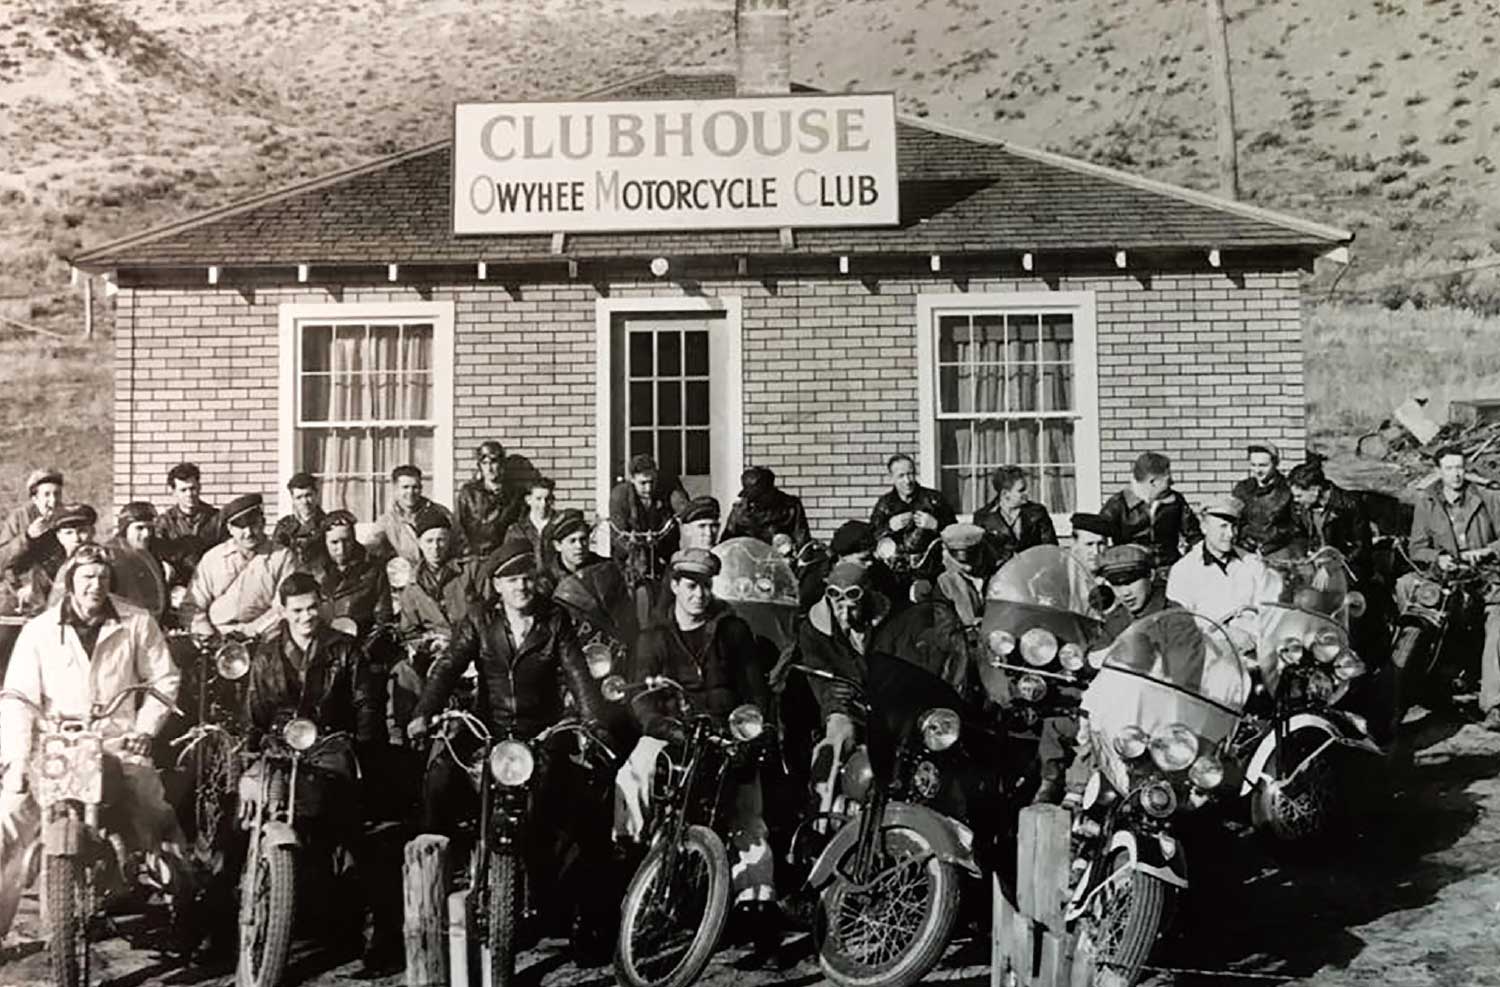 Owyhee Motorcycle Club